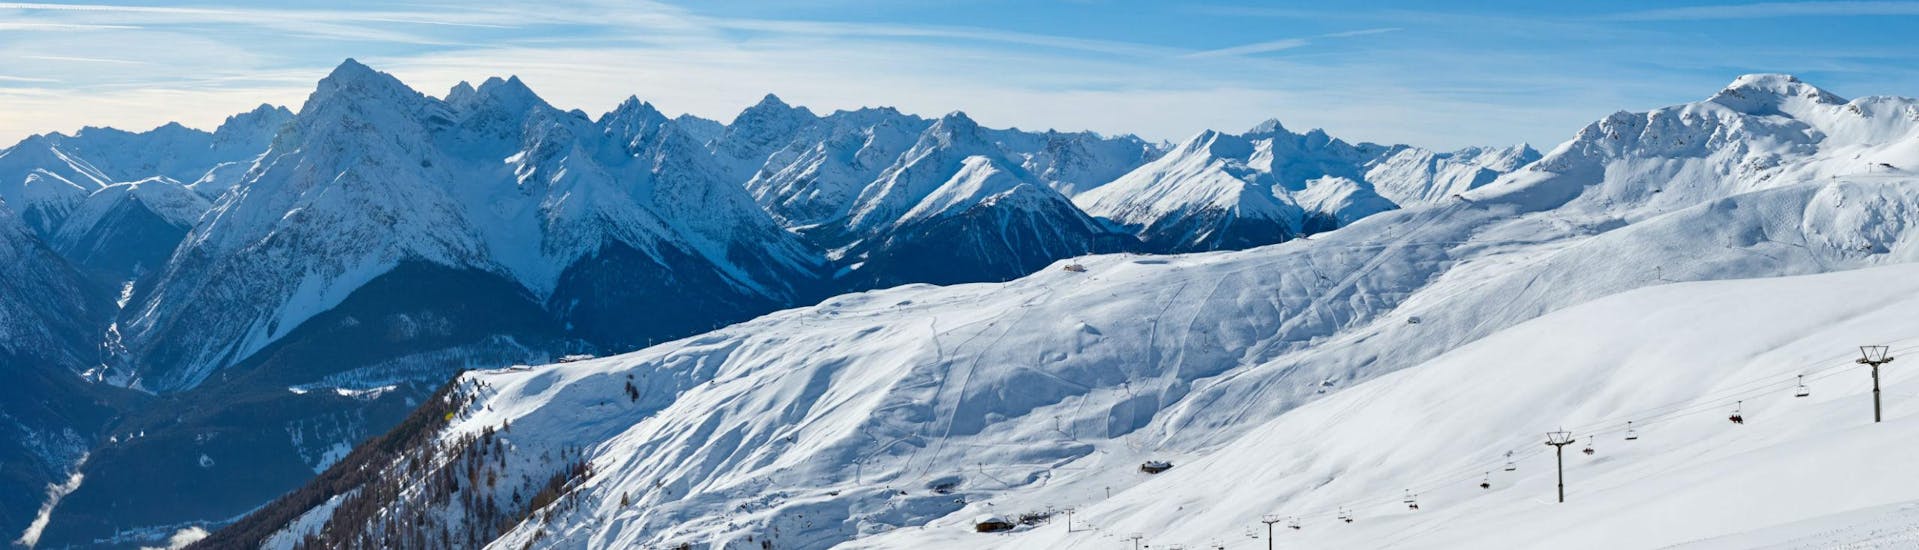 Ein herrliches Panorama über die Skipisten im schweizer Skigebiet Scuol - Motta Naluns, wo örtliche Skischulen eine Reihe an Skikursen anbieten.